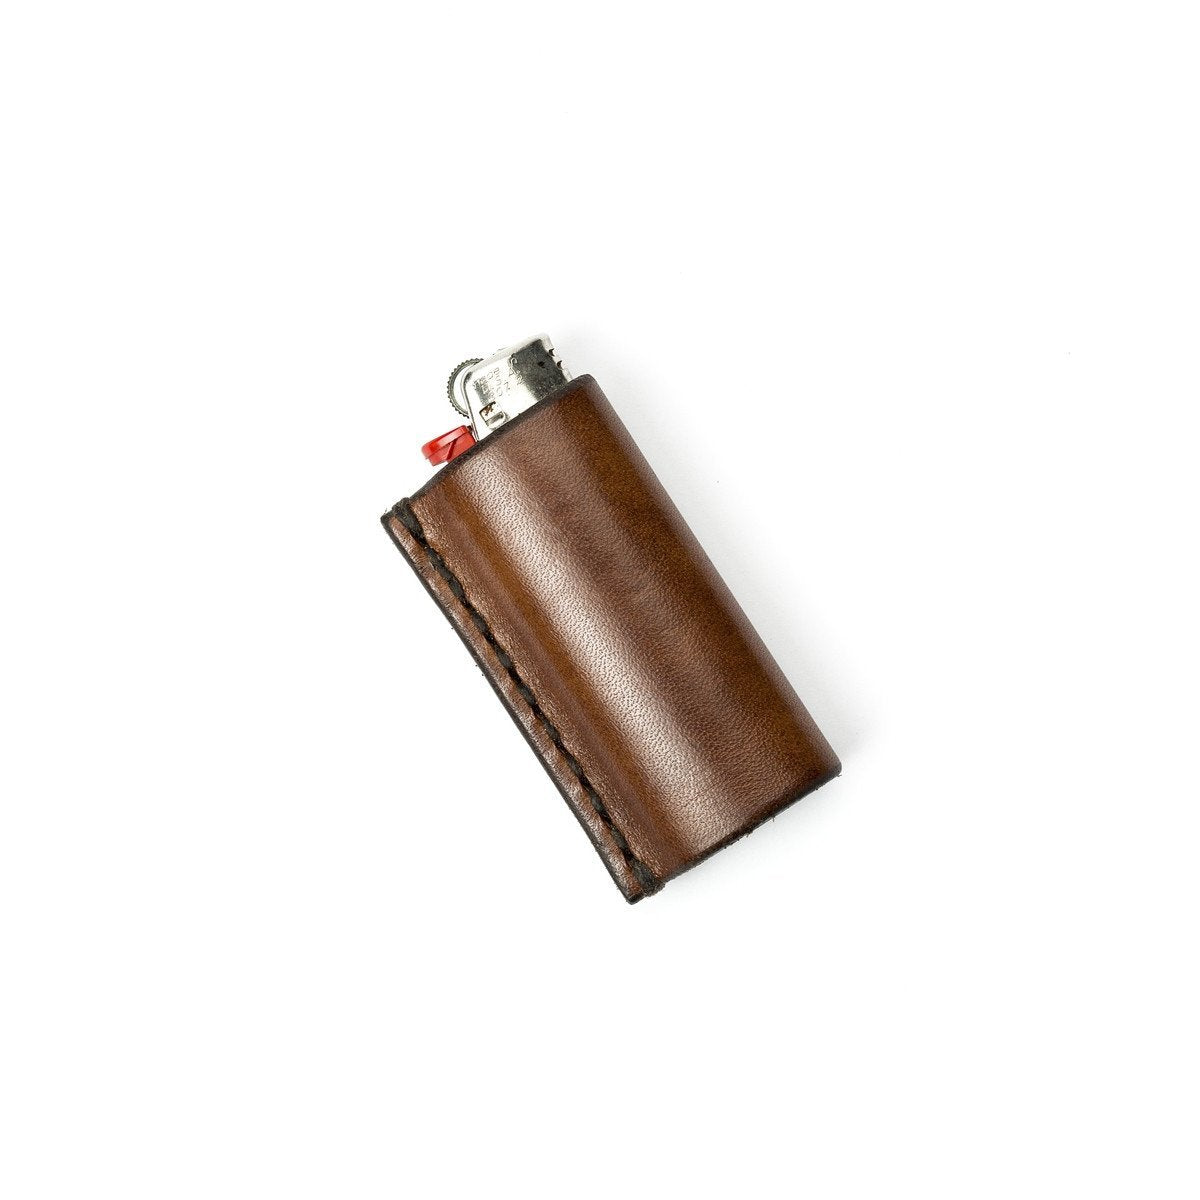 Vintage Wooden Wood Bic Lighter Case Holder Cover Sleeve